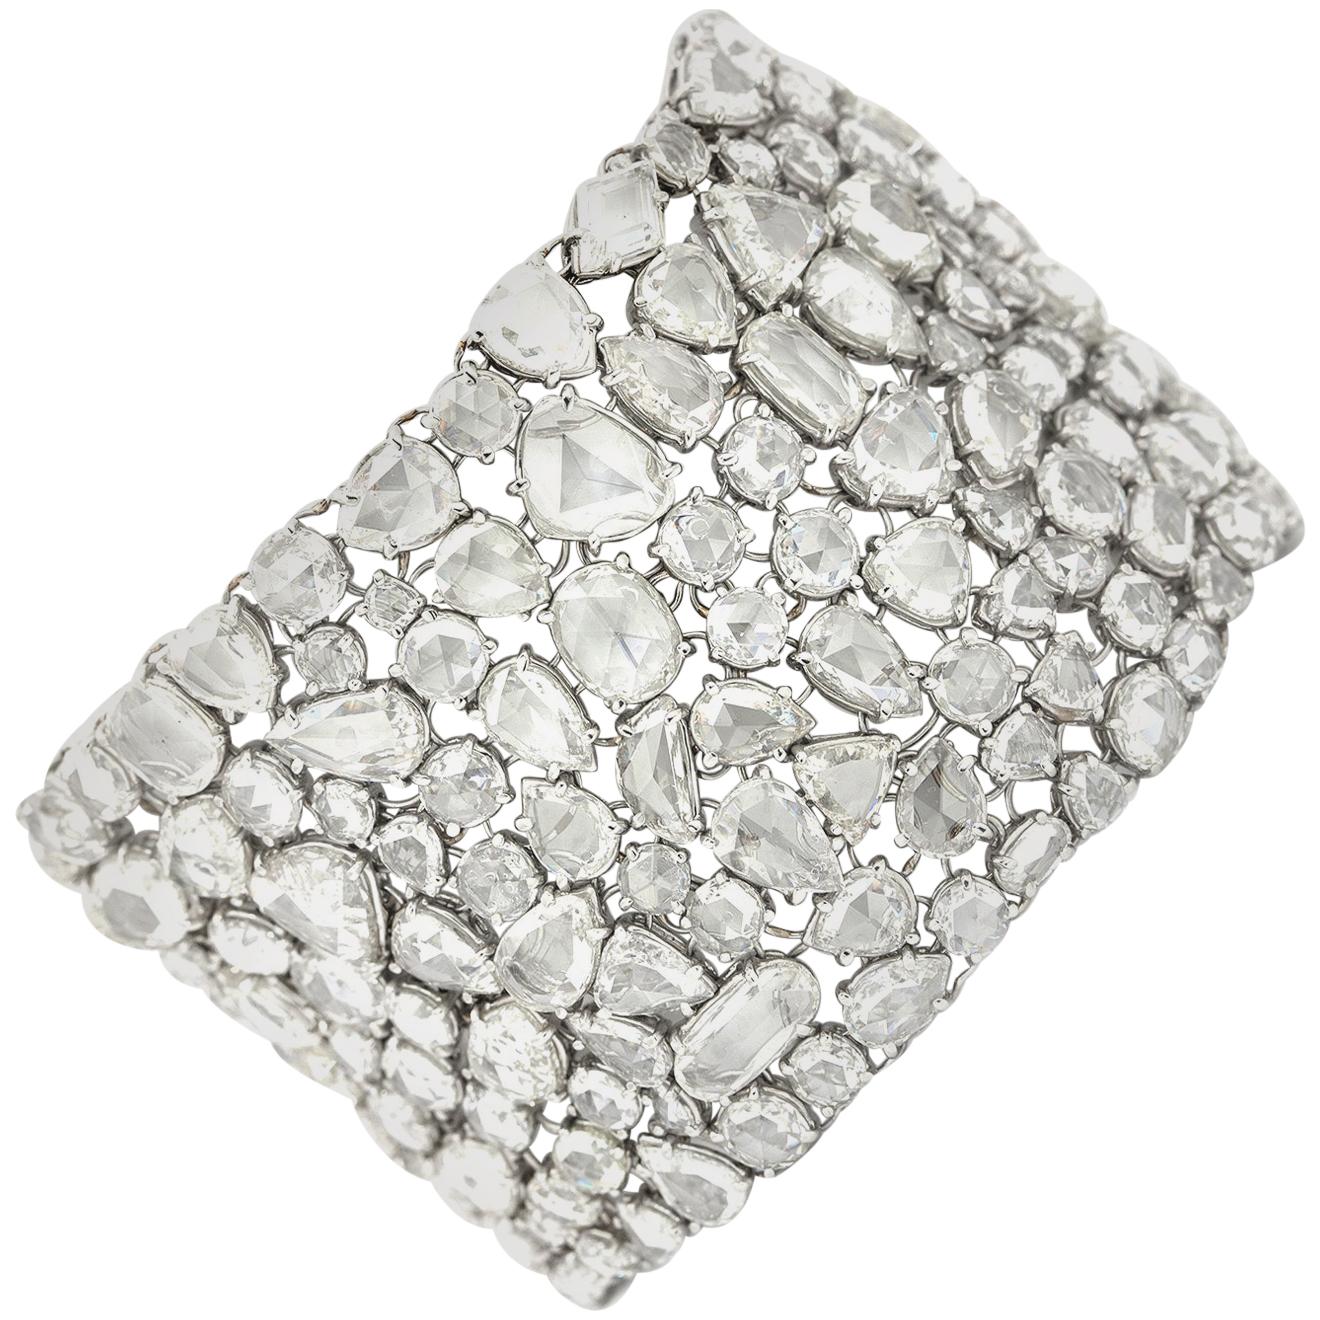 Diamond Cuff Platinum Bracelet with Over 100 Carat of Rose Cut Diamonds